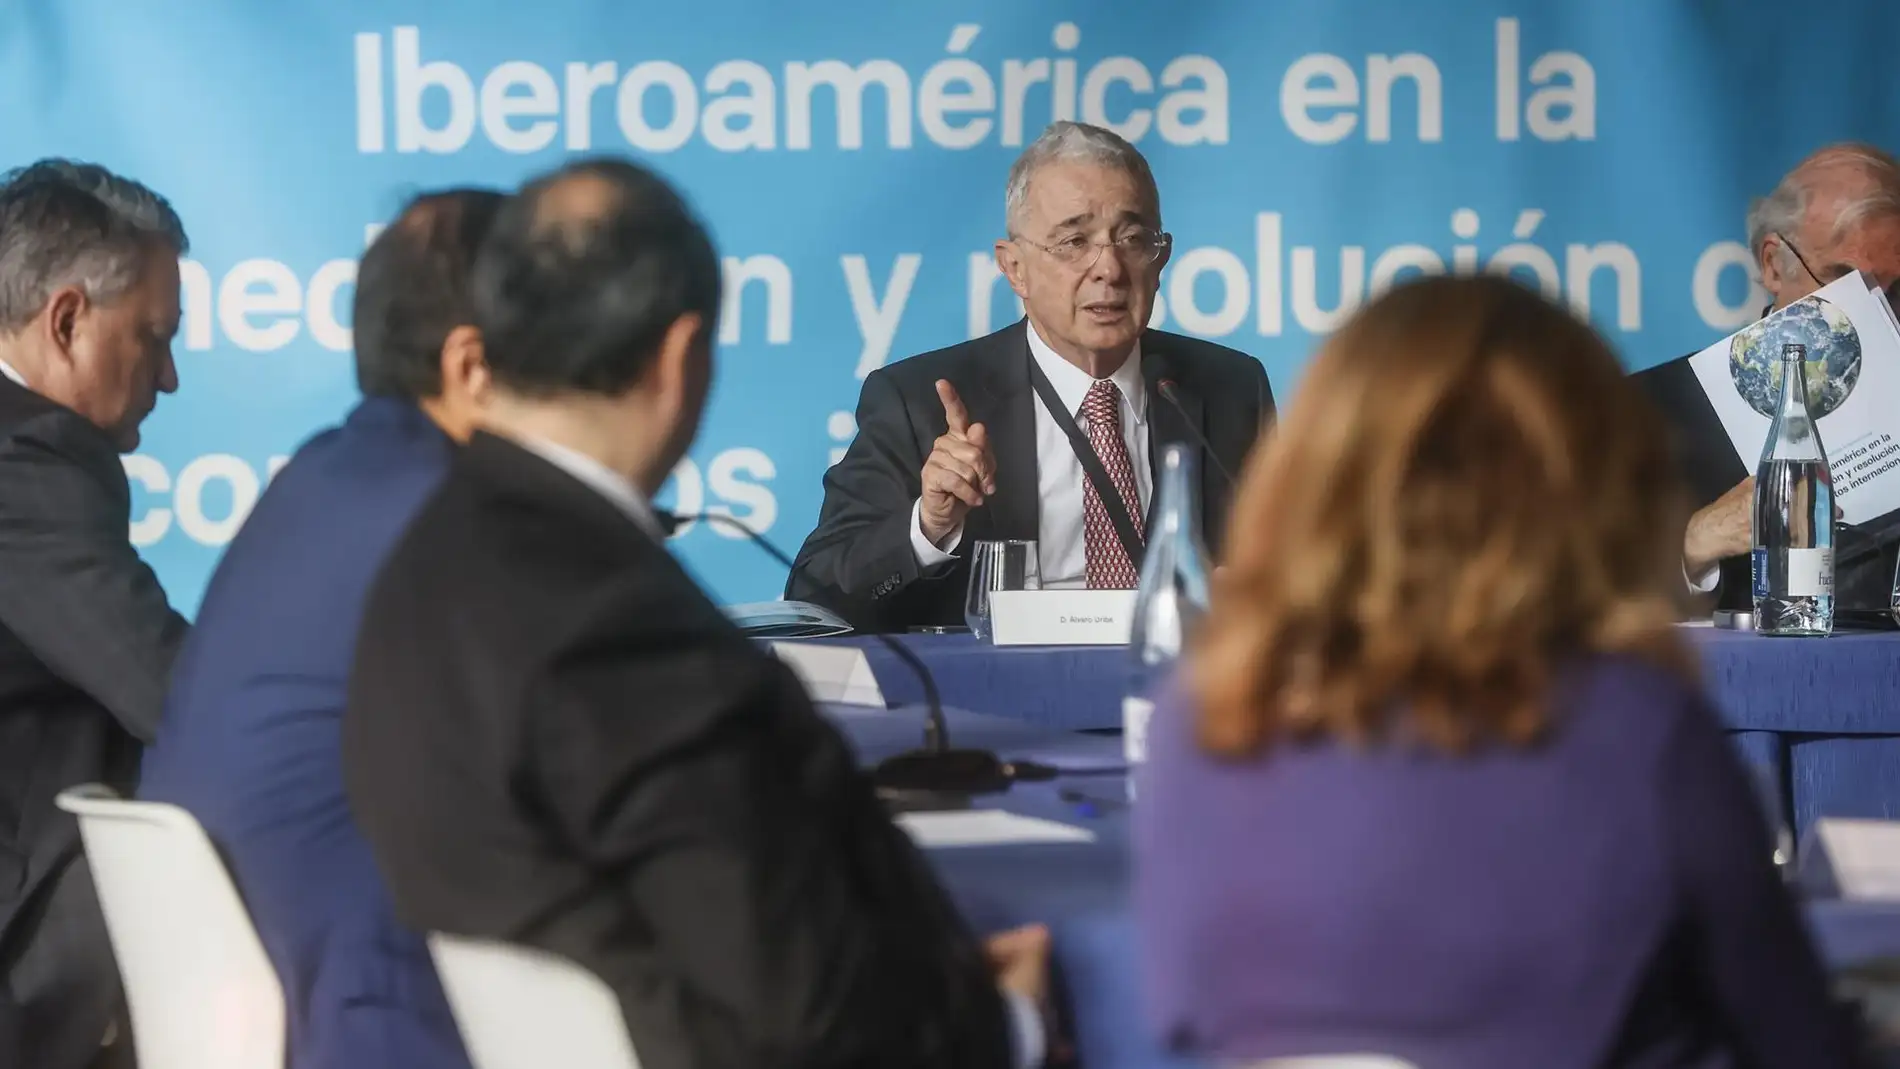 El expresidente de Colombia Álvaro Uribe interviene en la inauguración del I Foro Internacional 'Iberoamérica en la mediación y resolución de conflictos internacionales', en el Palacio de la Exposición de Valencia. - 